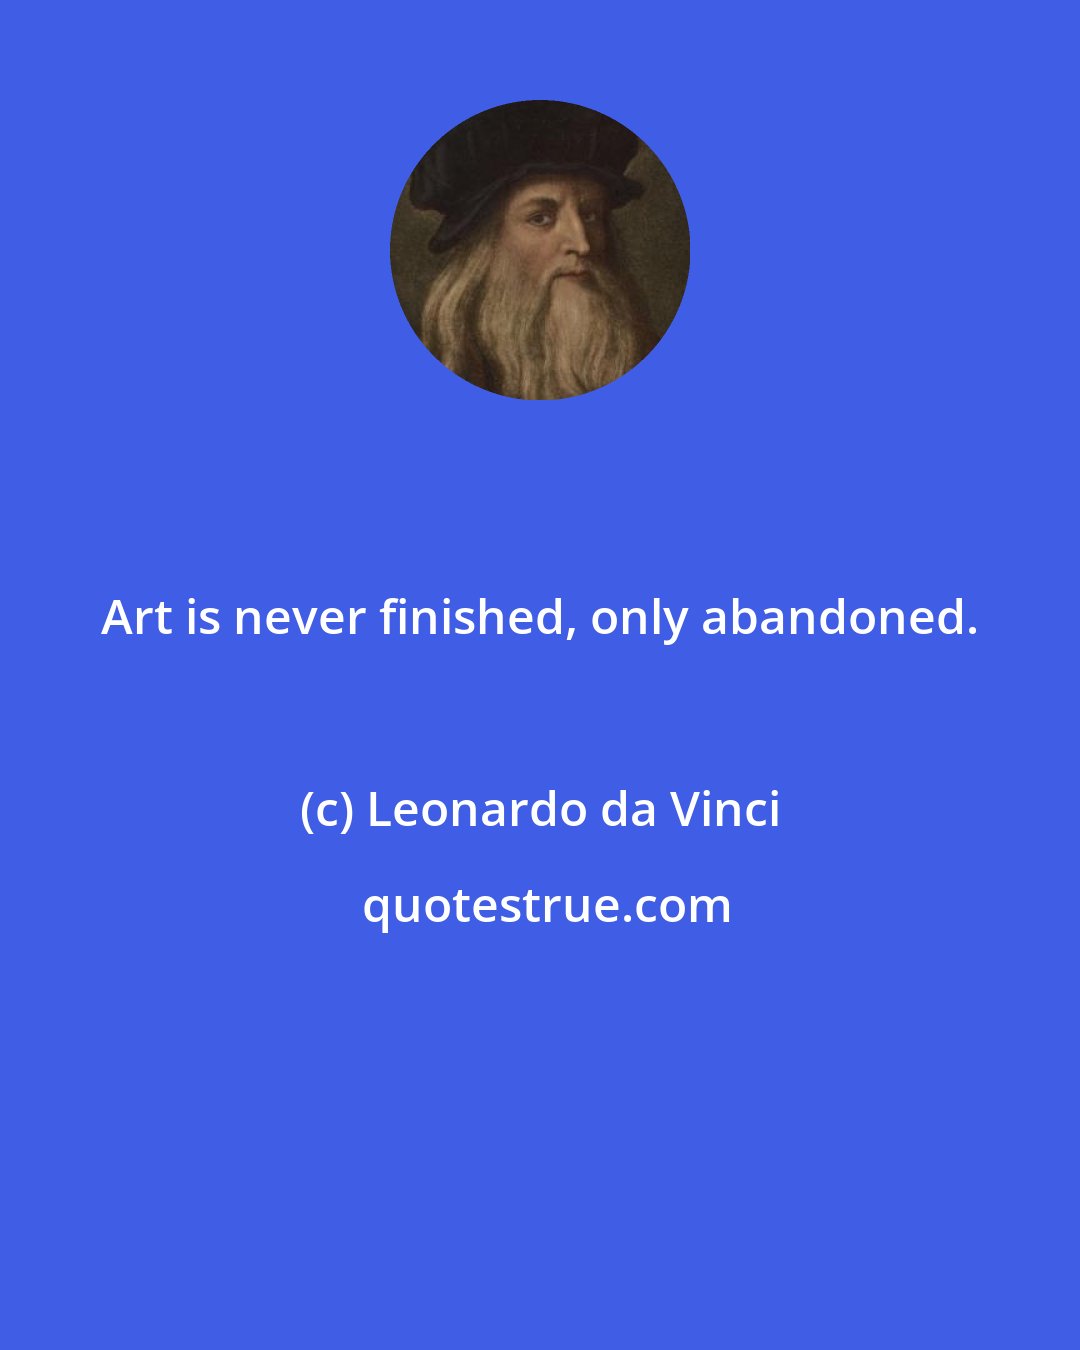 Leonardo da Vinci: Art is never finished, only abandoned.